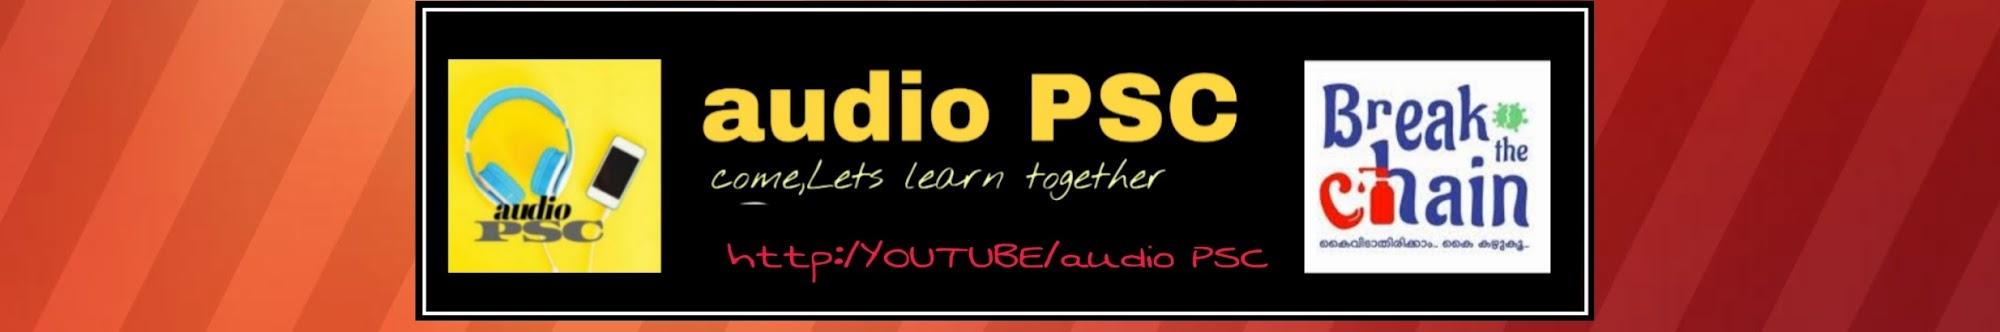 audio PSC